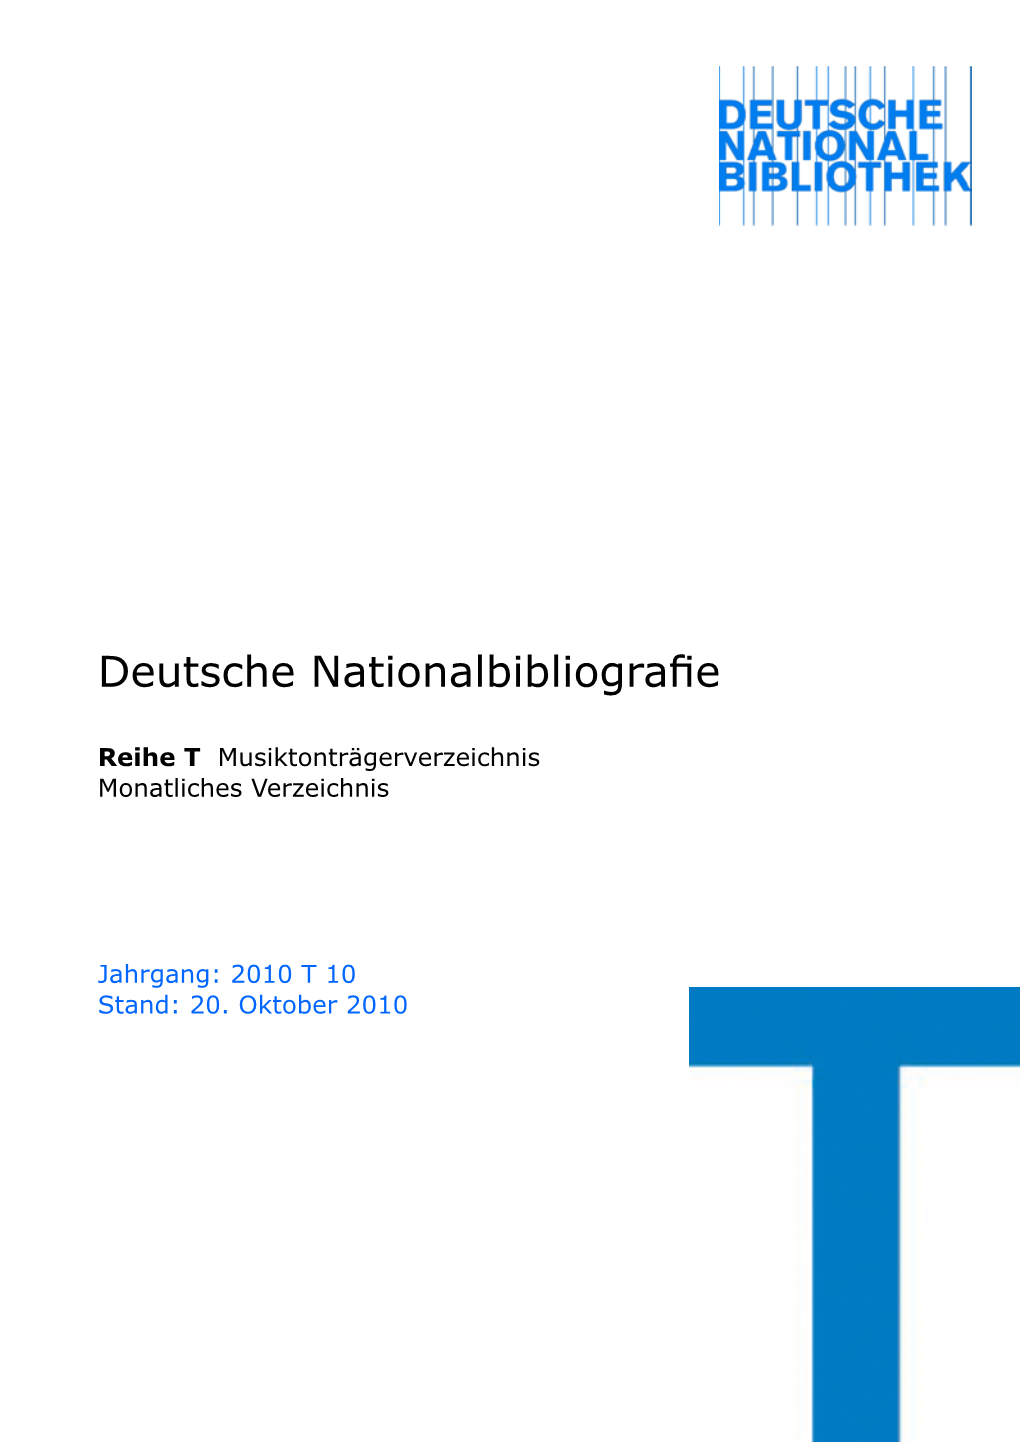 Deutsche Nationalbibliografie 2010 T 10